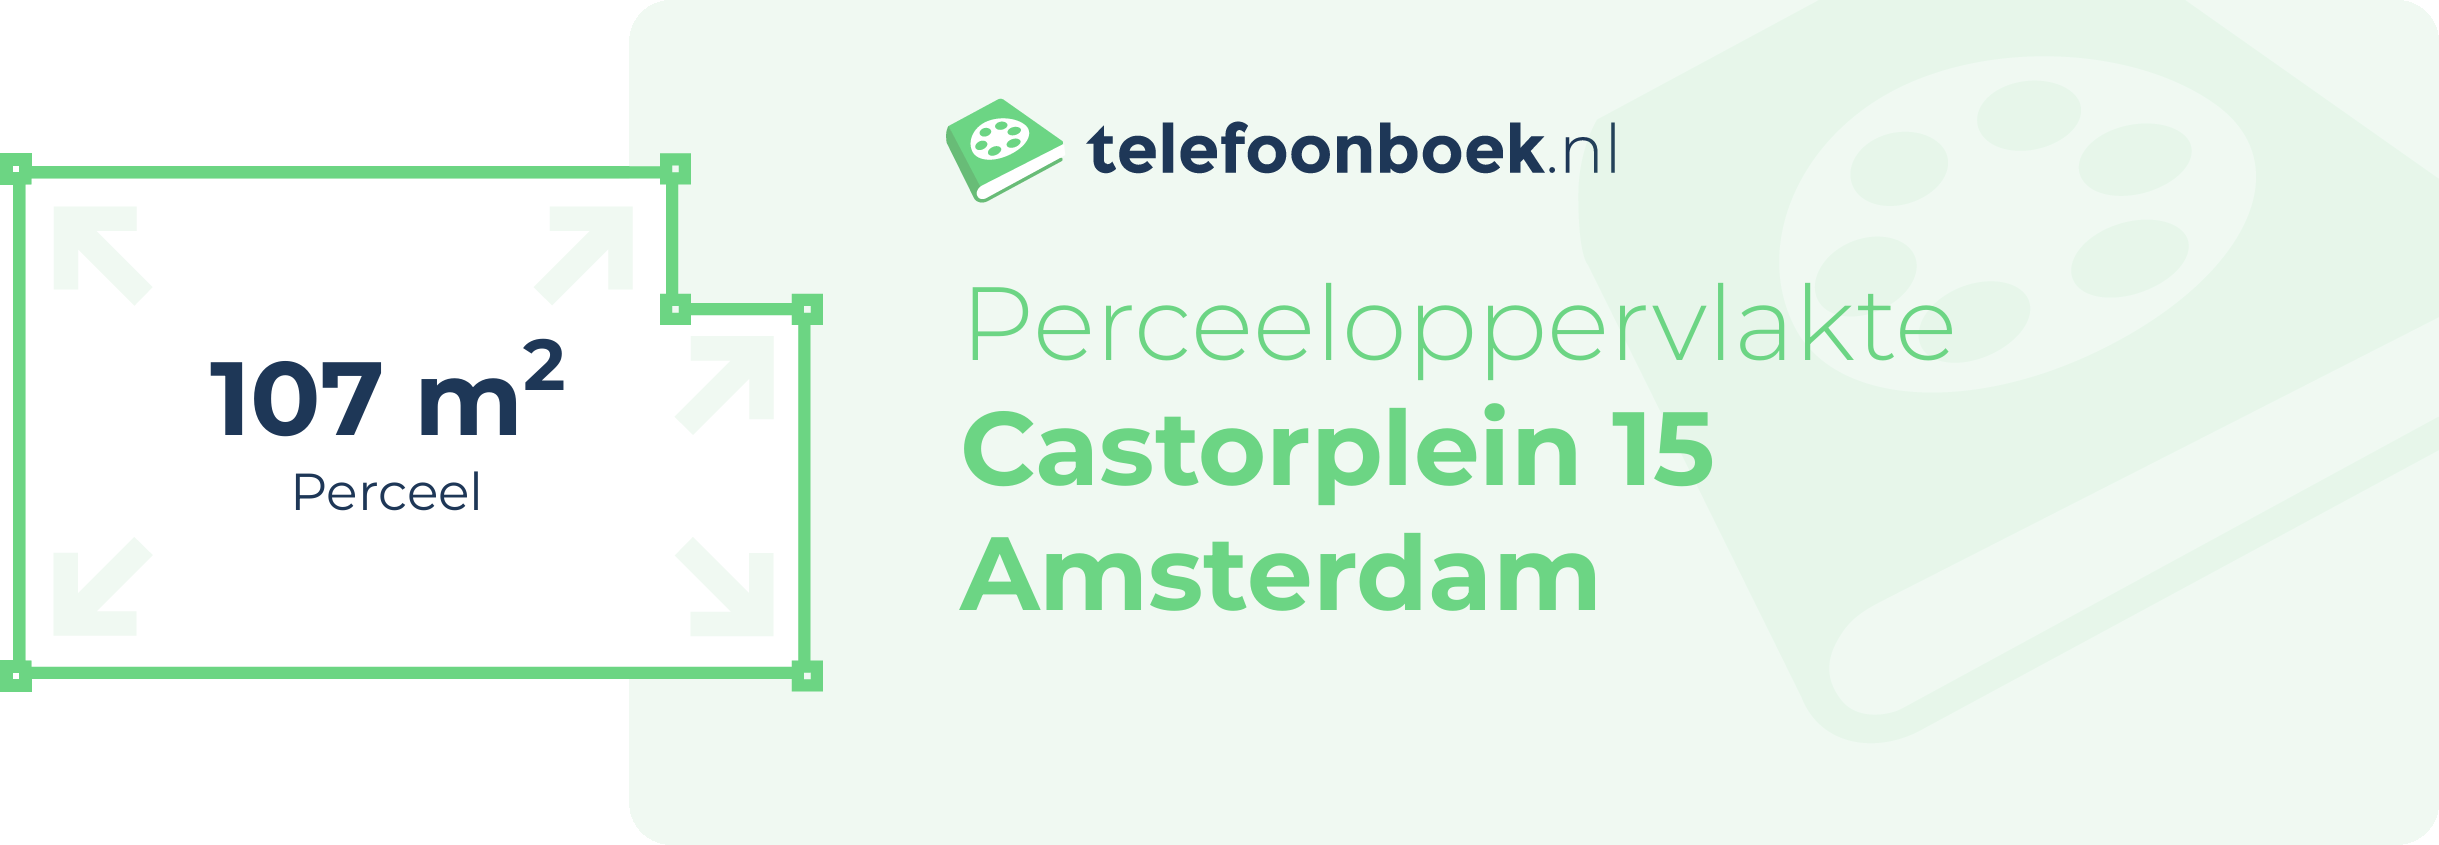 Perceeloppervlakte Castorplein 15 Amsterdam